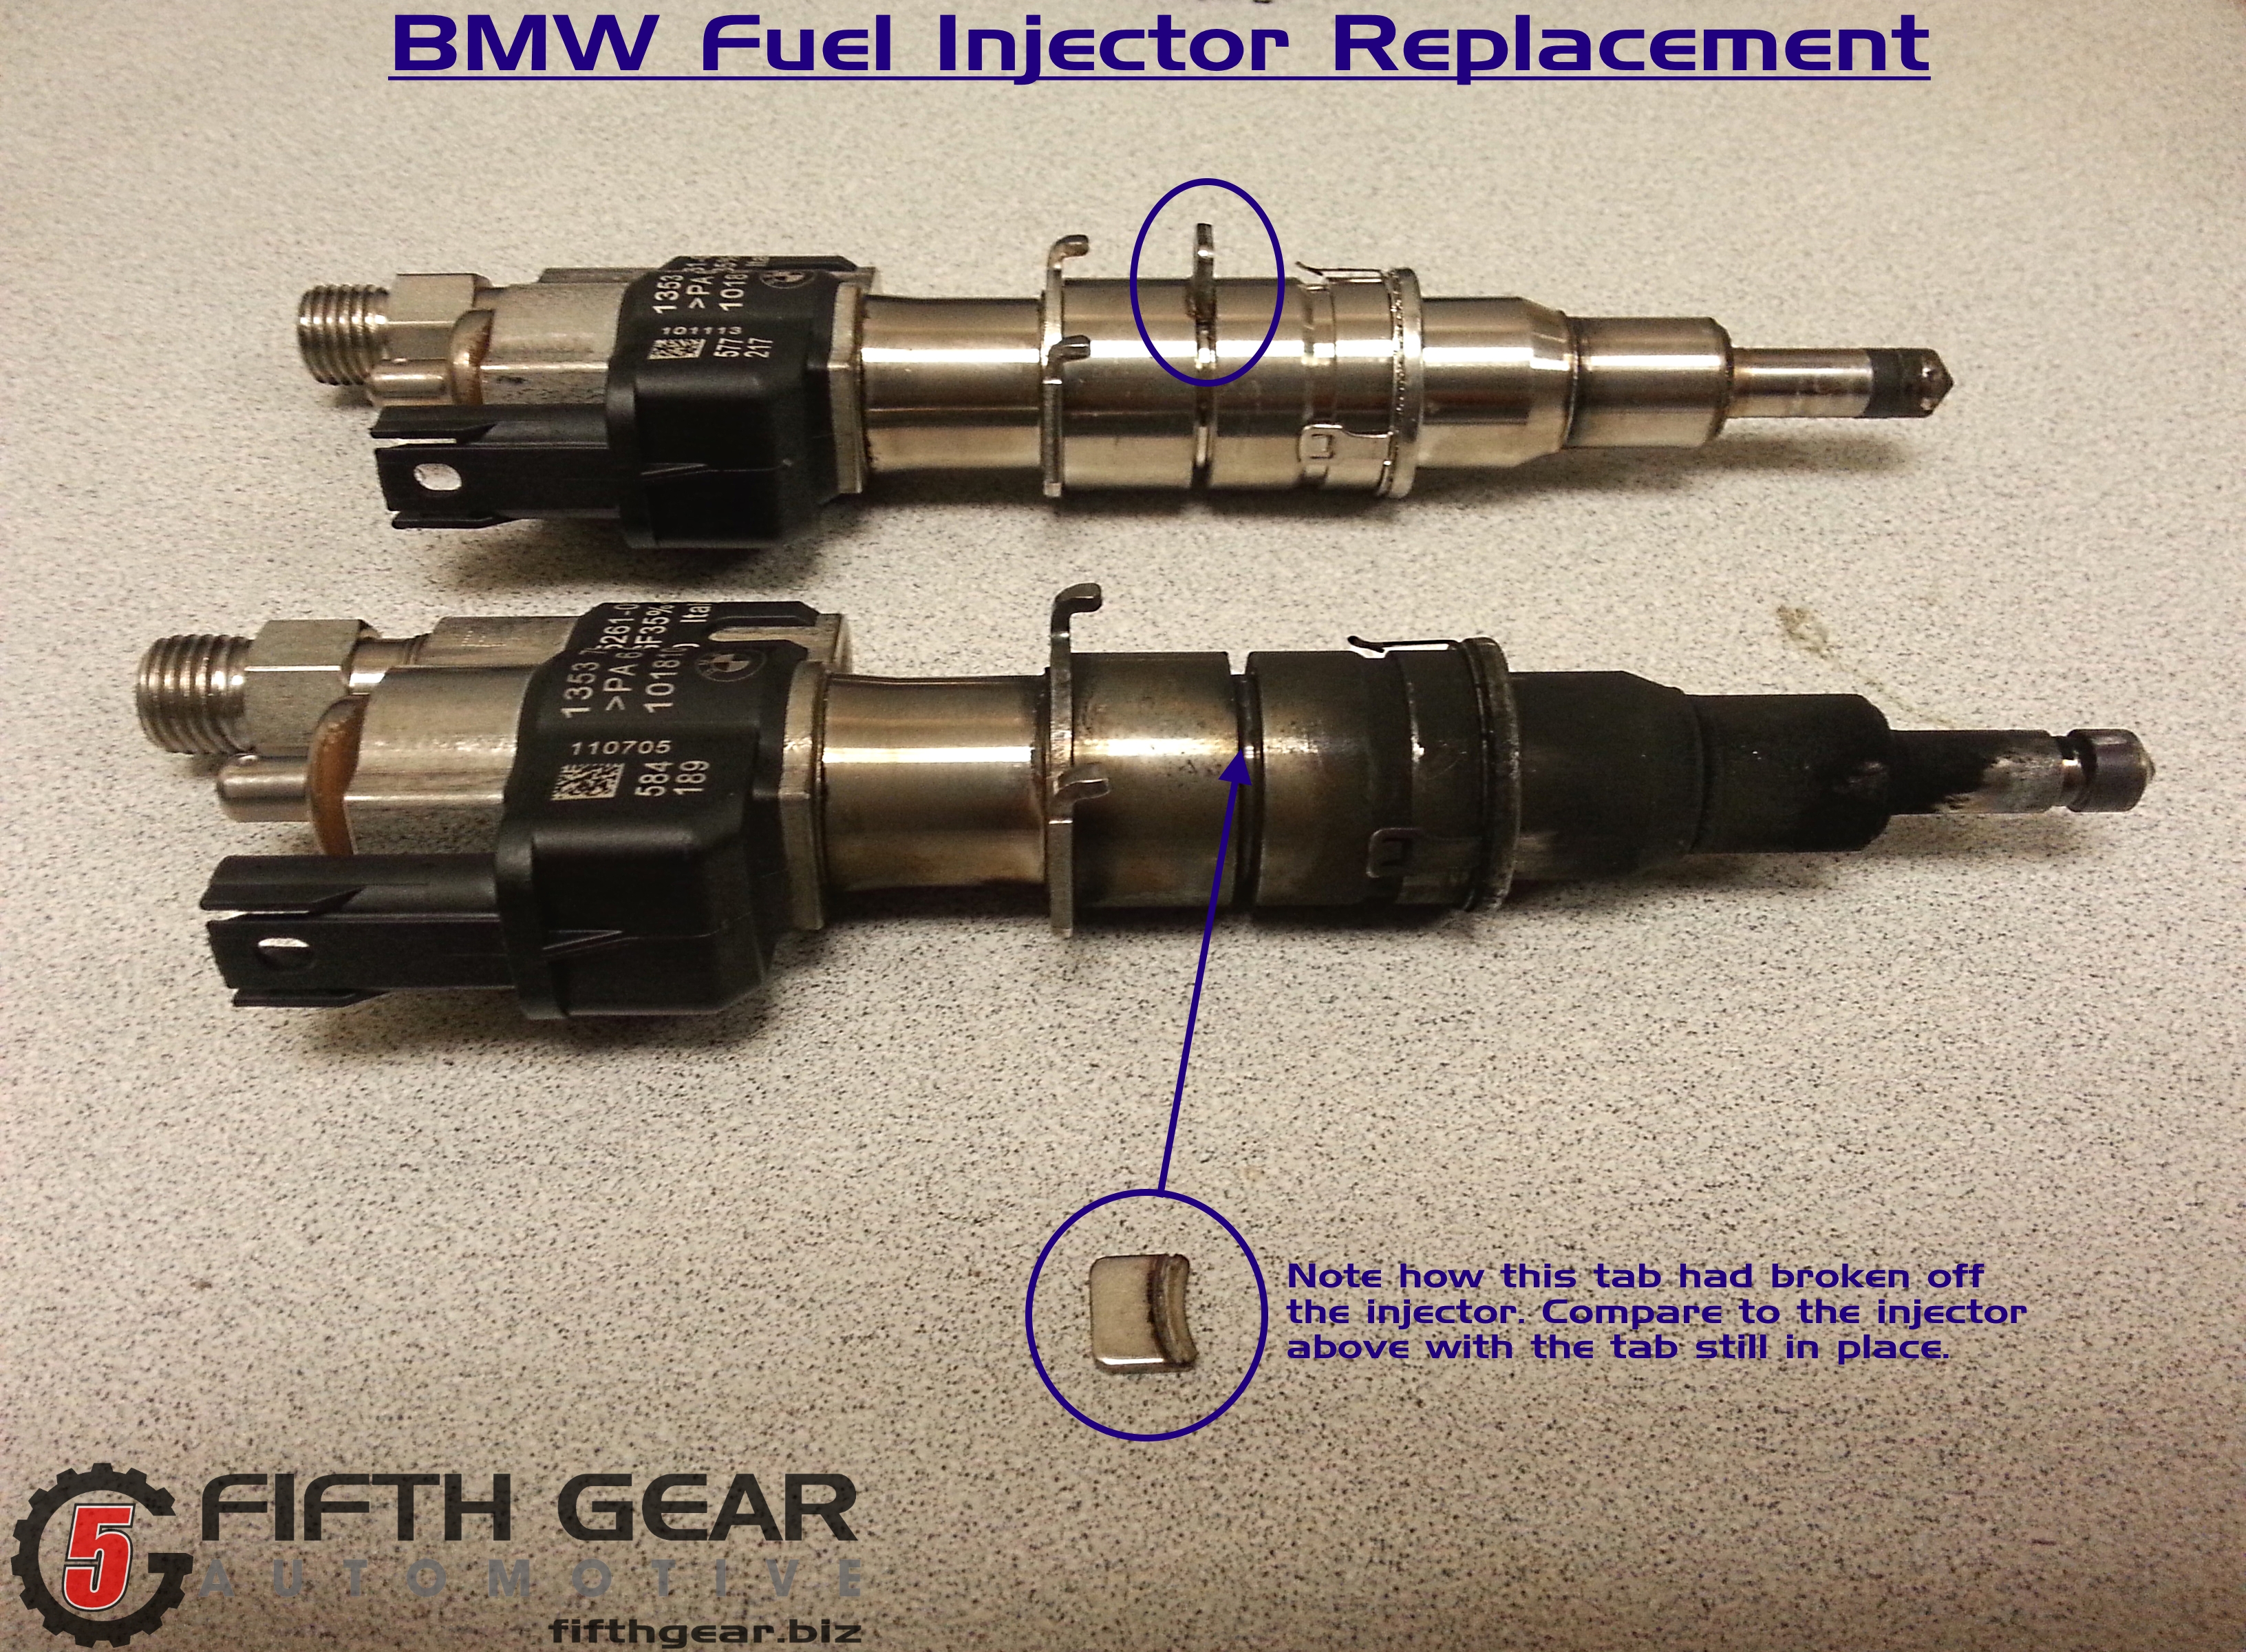 Fuel injector. BMW injector. BMW n63tu fuel injectors. 74091 ZF форсунка с чего.